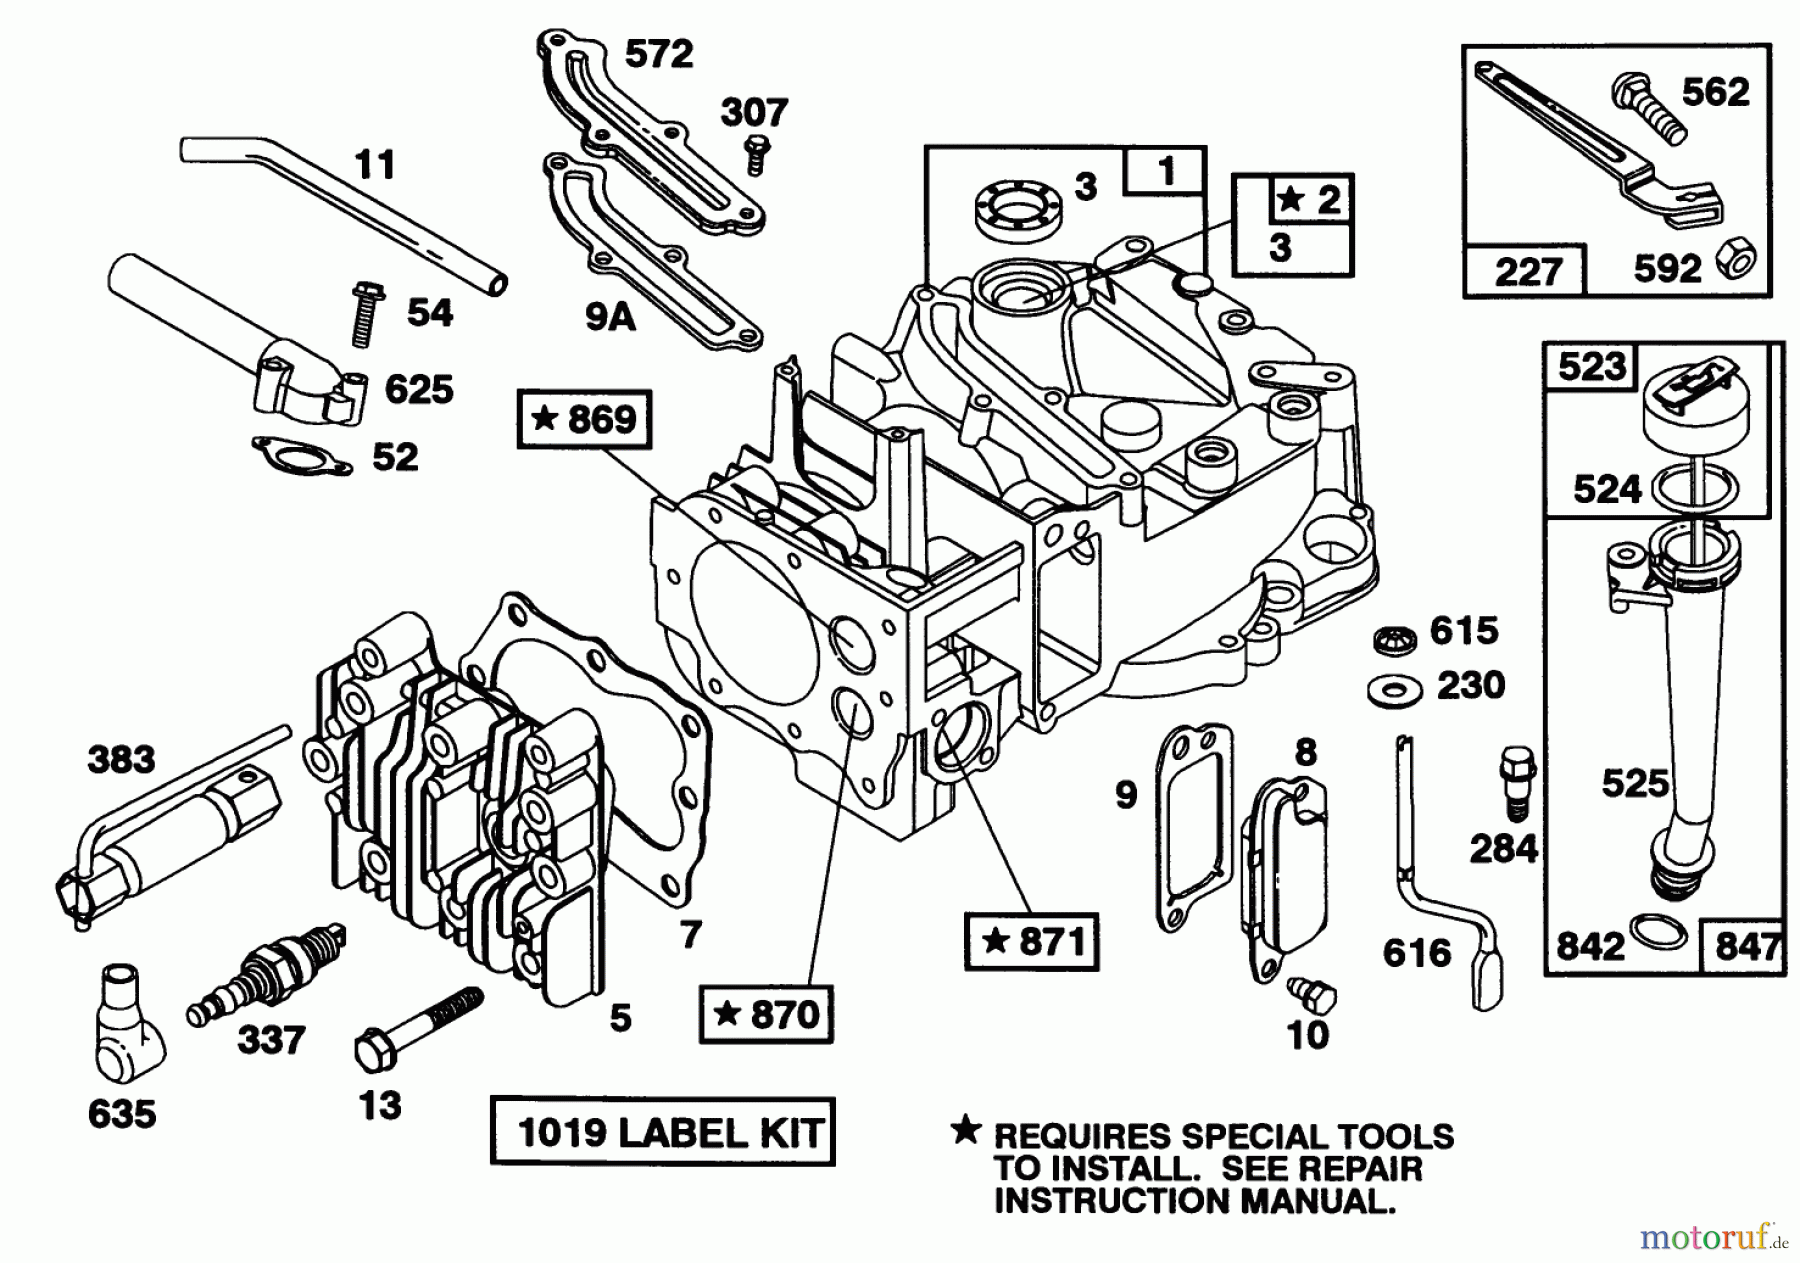  Toro Neu Mowers, Walk-Behind Seite 1 16403 - Toro Lawnmower, 1991 (1000001-1999999) ENGINE BRIGGS & STRATTON MODEL 122702-3171-01 #1